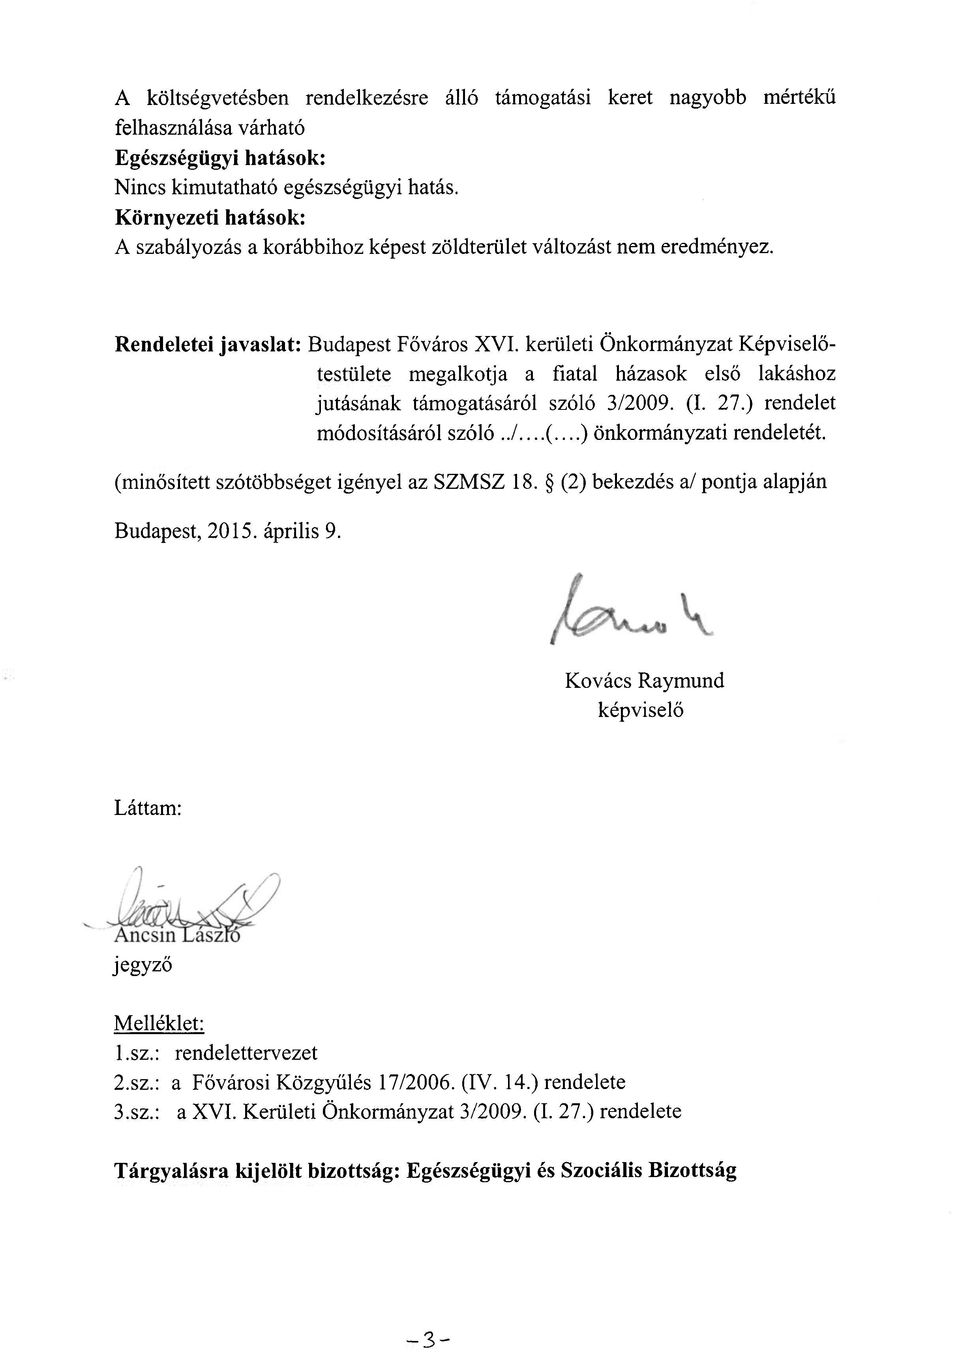 Kovács Raymund képviselő Láttam: AncsinLászíö jegyző Melléklet: l.sz.: rendelettervezet 2.sz.: a Fővárosi Közgyűlés 17/2006. (IV. 14.) rendelete 3.sz.: a XVI. Kerületi Önkormányzat 3/2009. (I. 27.